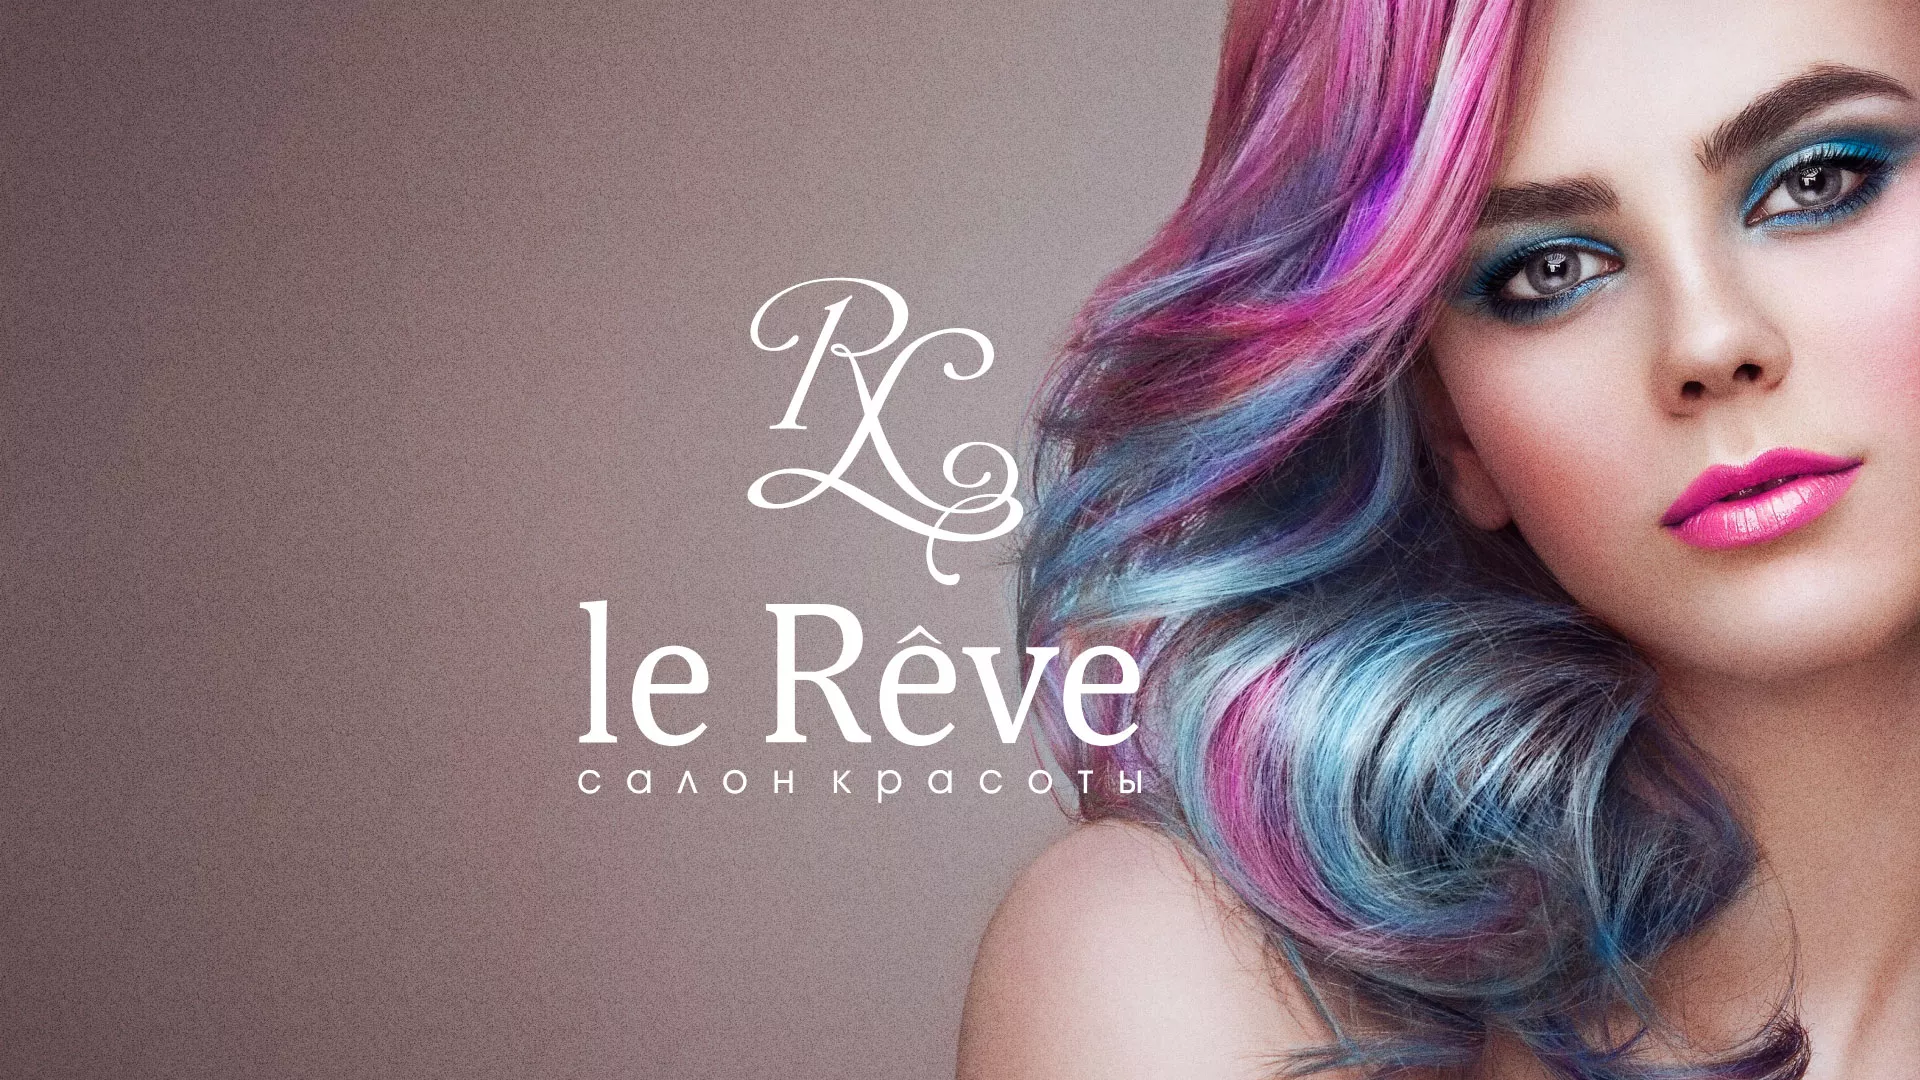 Создание сайта для салона красоты «Le Reve» в Электроуглях